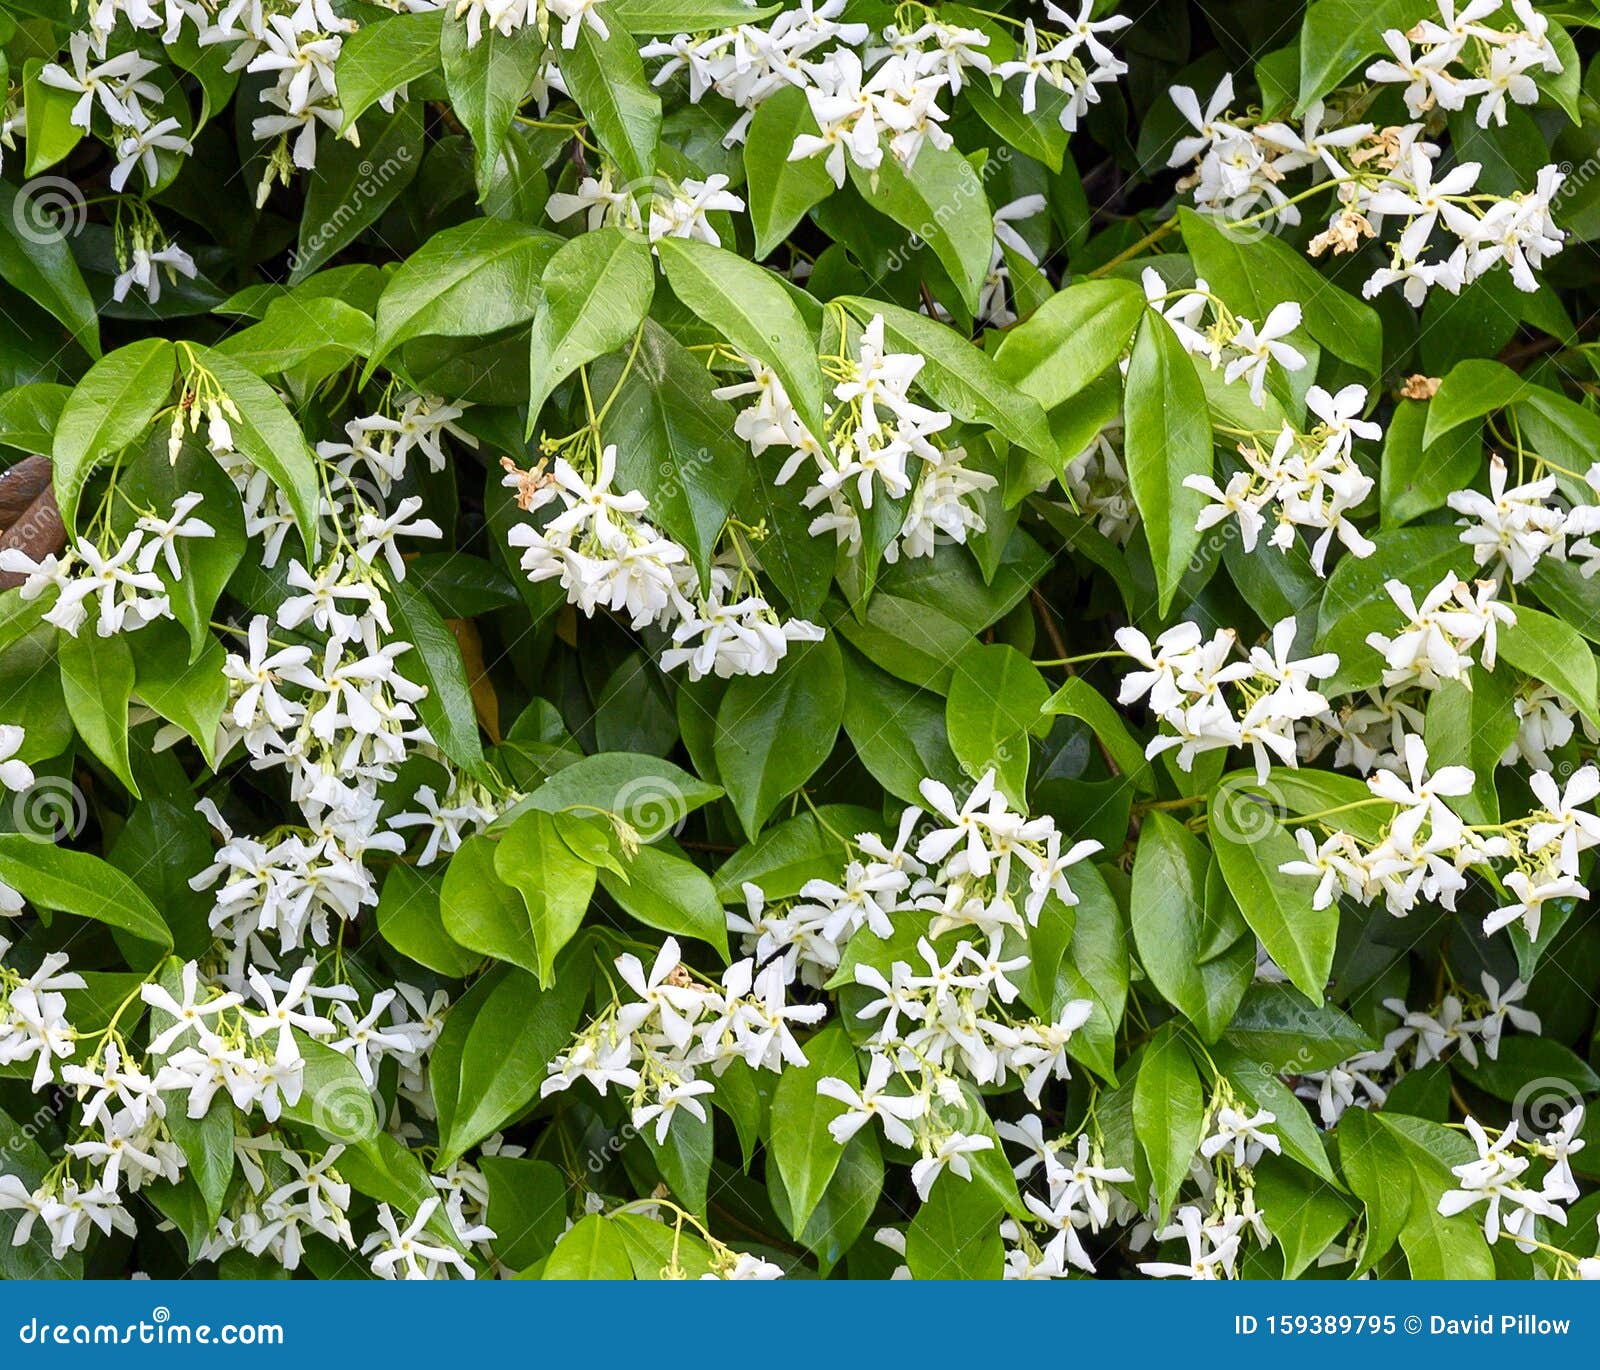 white blooms of star jasmine, gourdon village, france